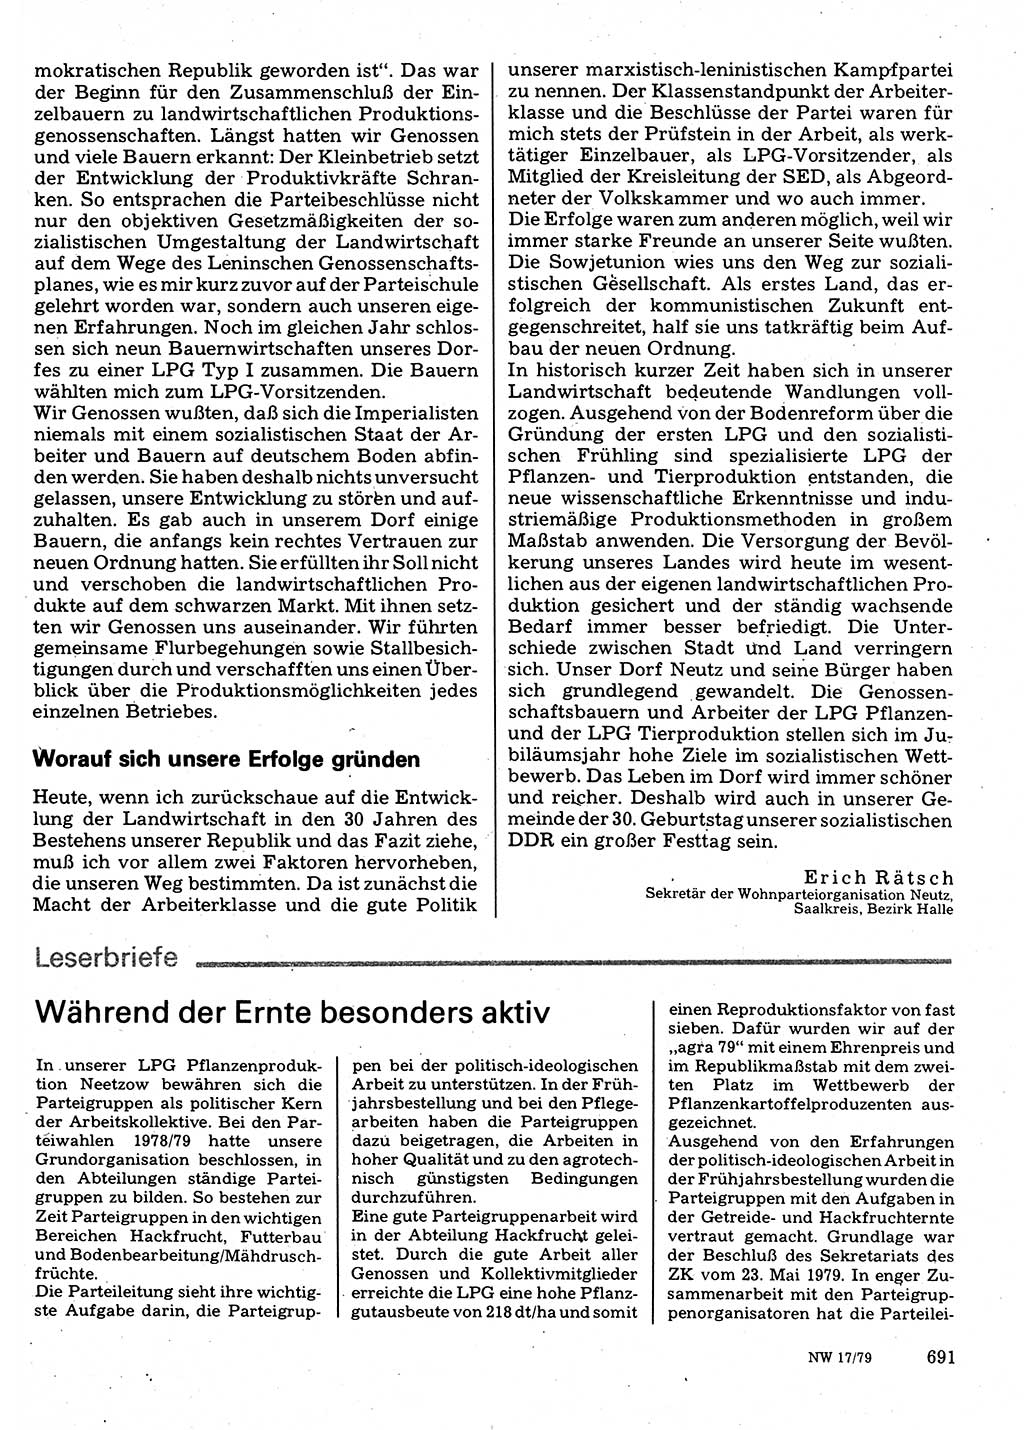 Neuer Weg (NW), Organ des Zentralkomitees (ZK) der SED (Sozialistische Einheitspartei Deutschlands) für Fragen des Parteilebens, 34. Jahrgang [Deutsche Demokratische Republik (DDR)] 1979, Seite 691 (NW ZK SED DDR 1979, S. 691)